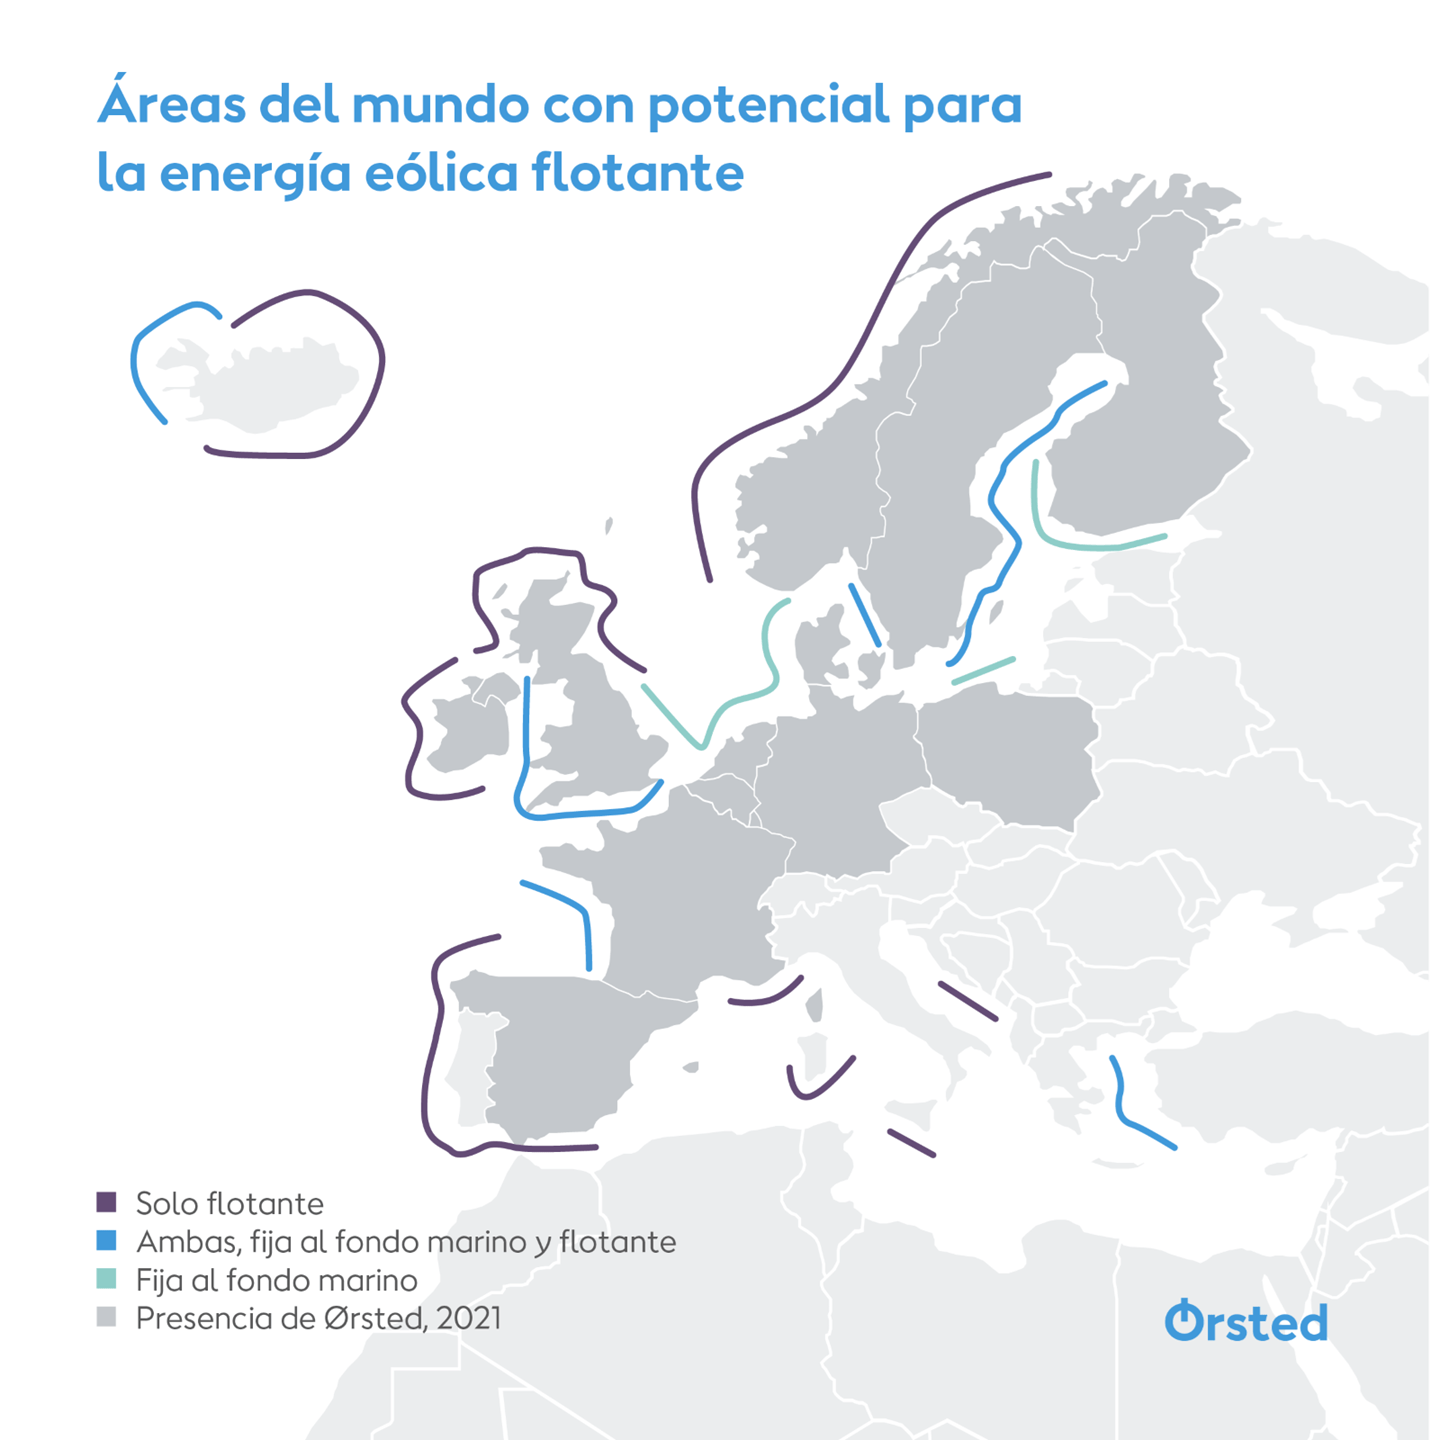 Ilustración de los lugares de algunos países europeos en los que Ørsted puede instalar aerogeneradores marinos.